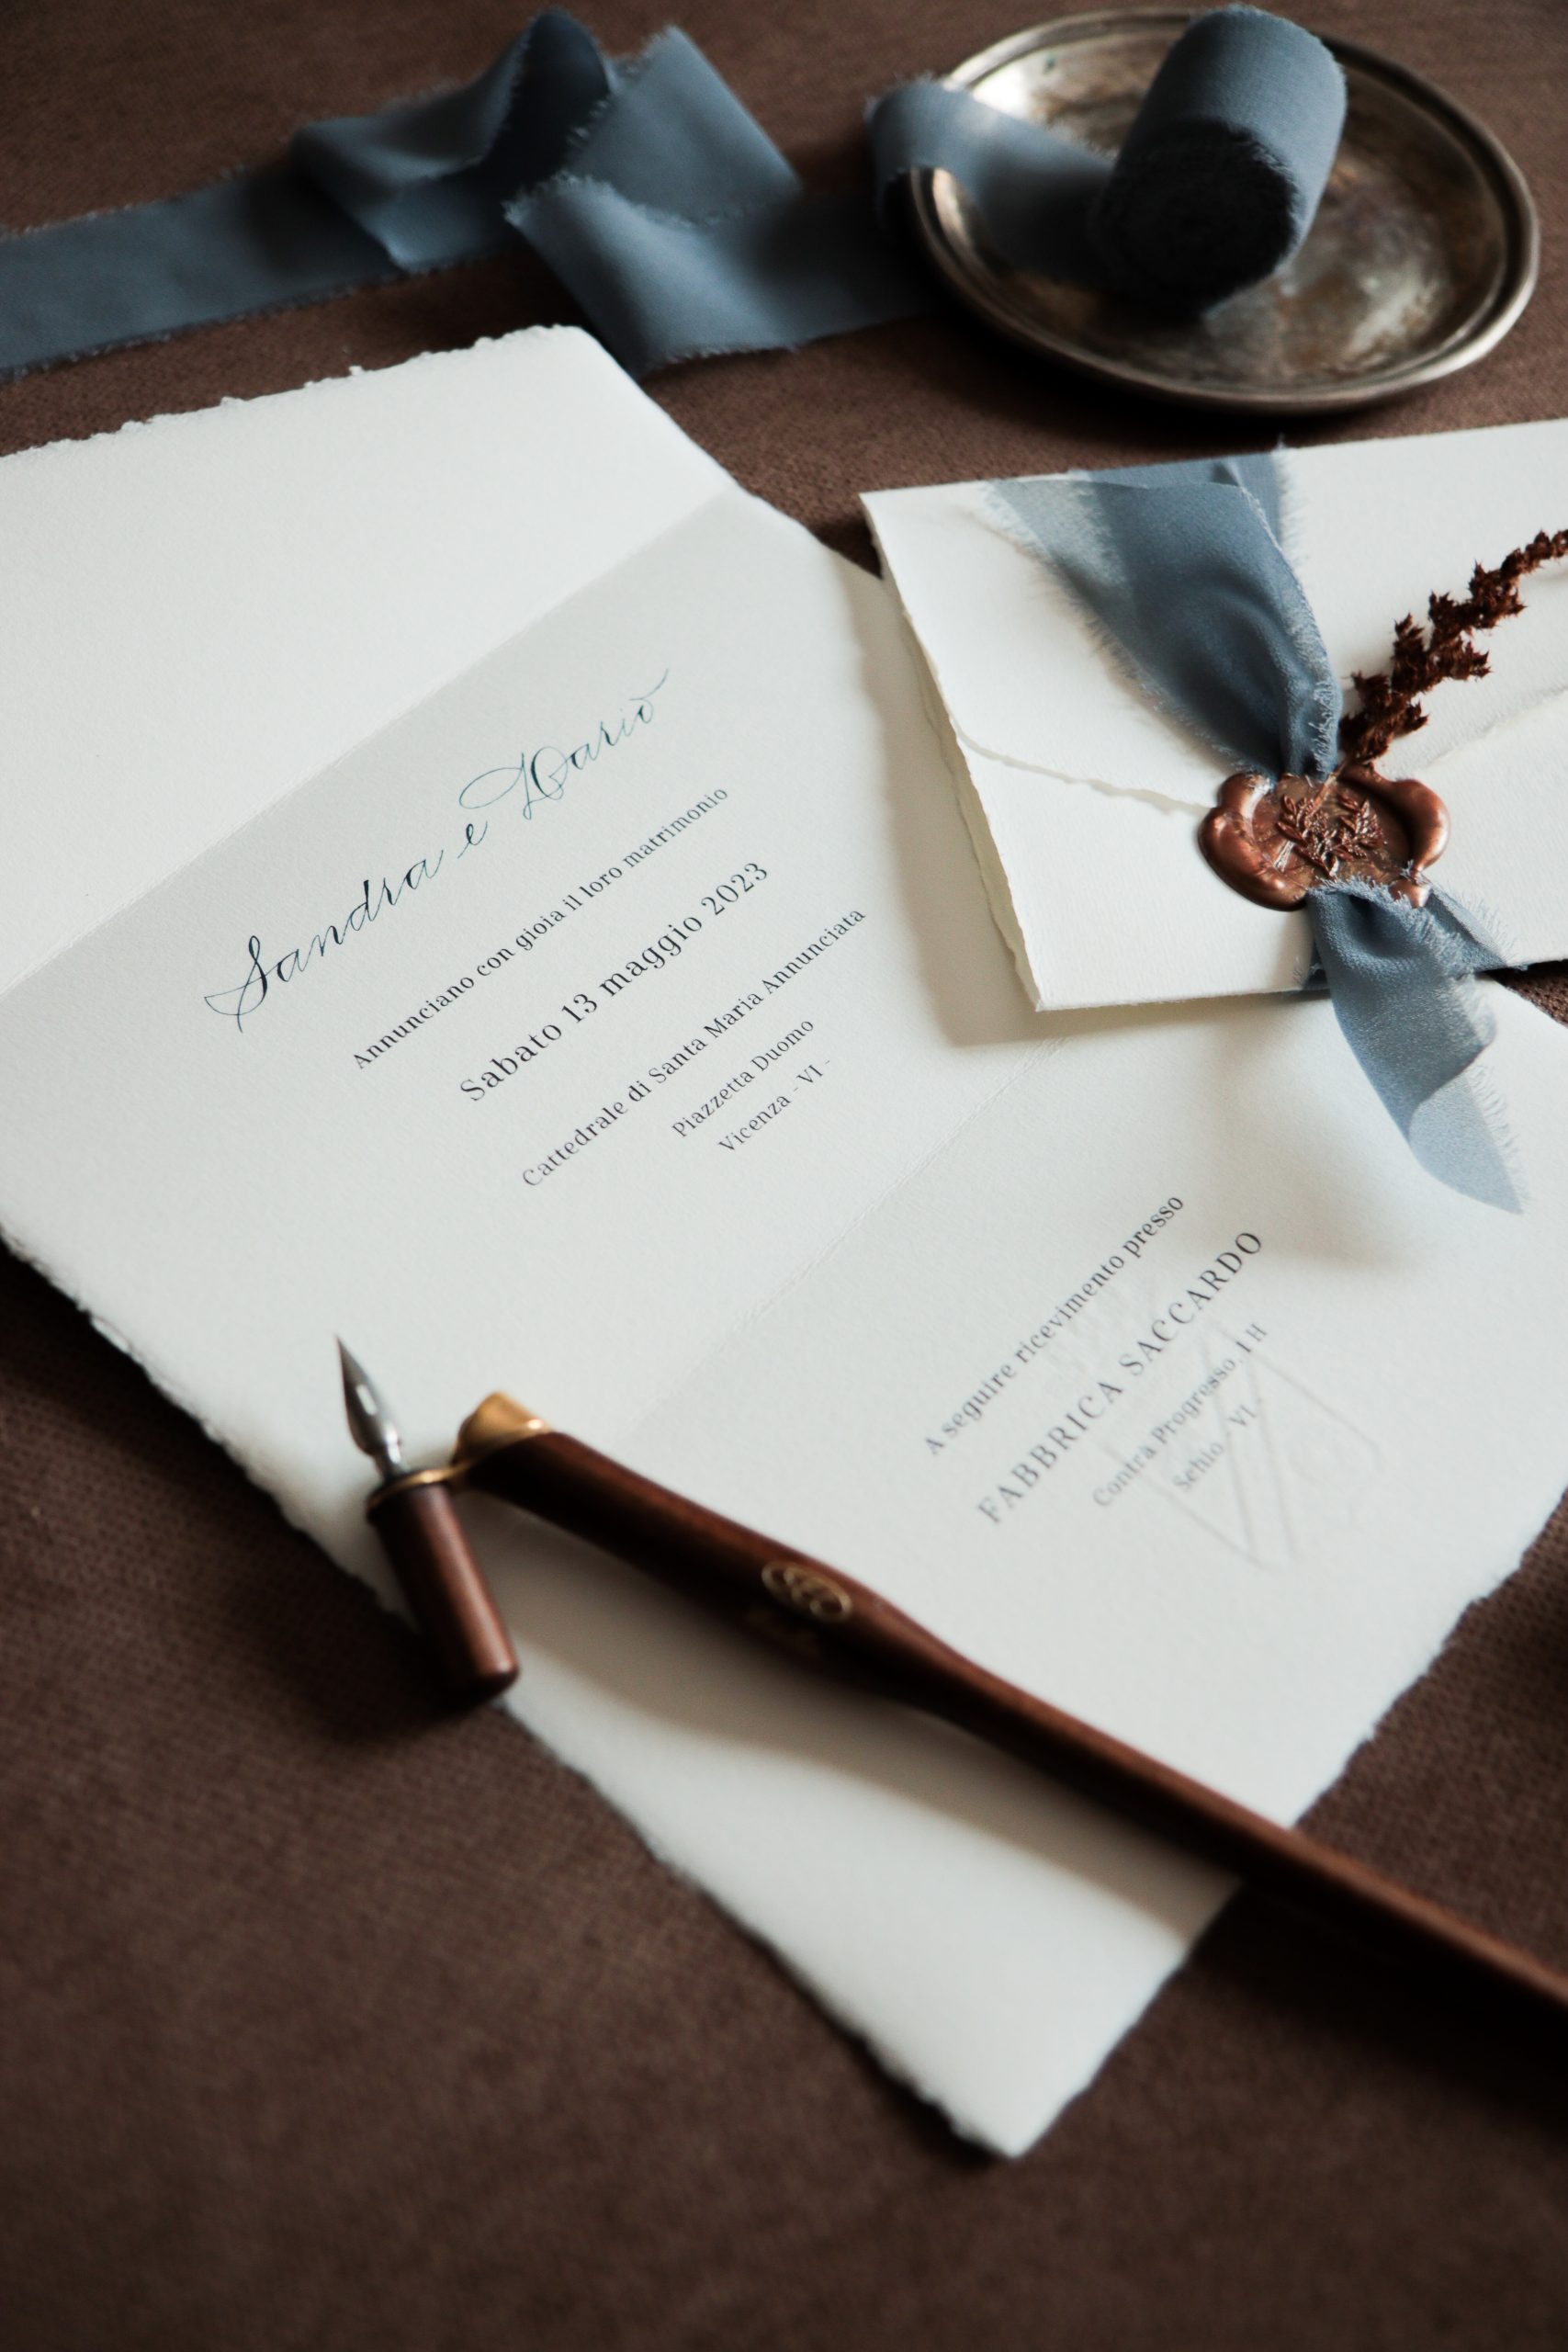 Inviti e partecipazioni matrimonio in calligrafia - Modello Amalfi